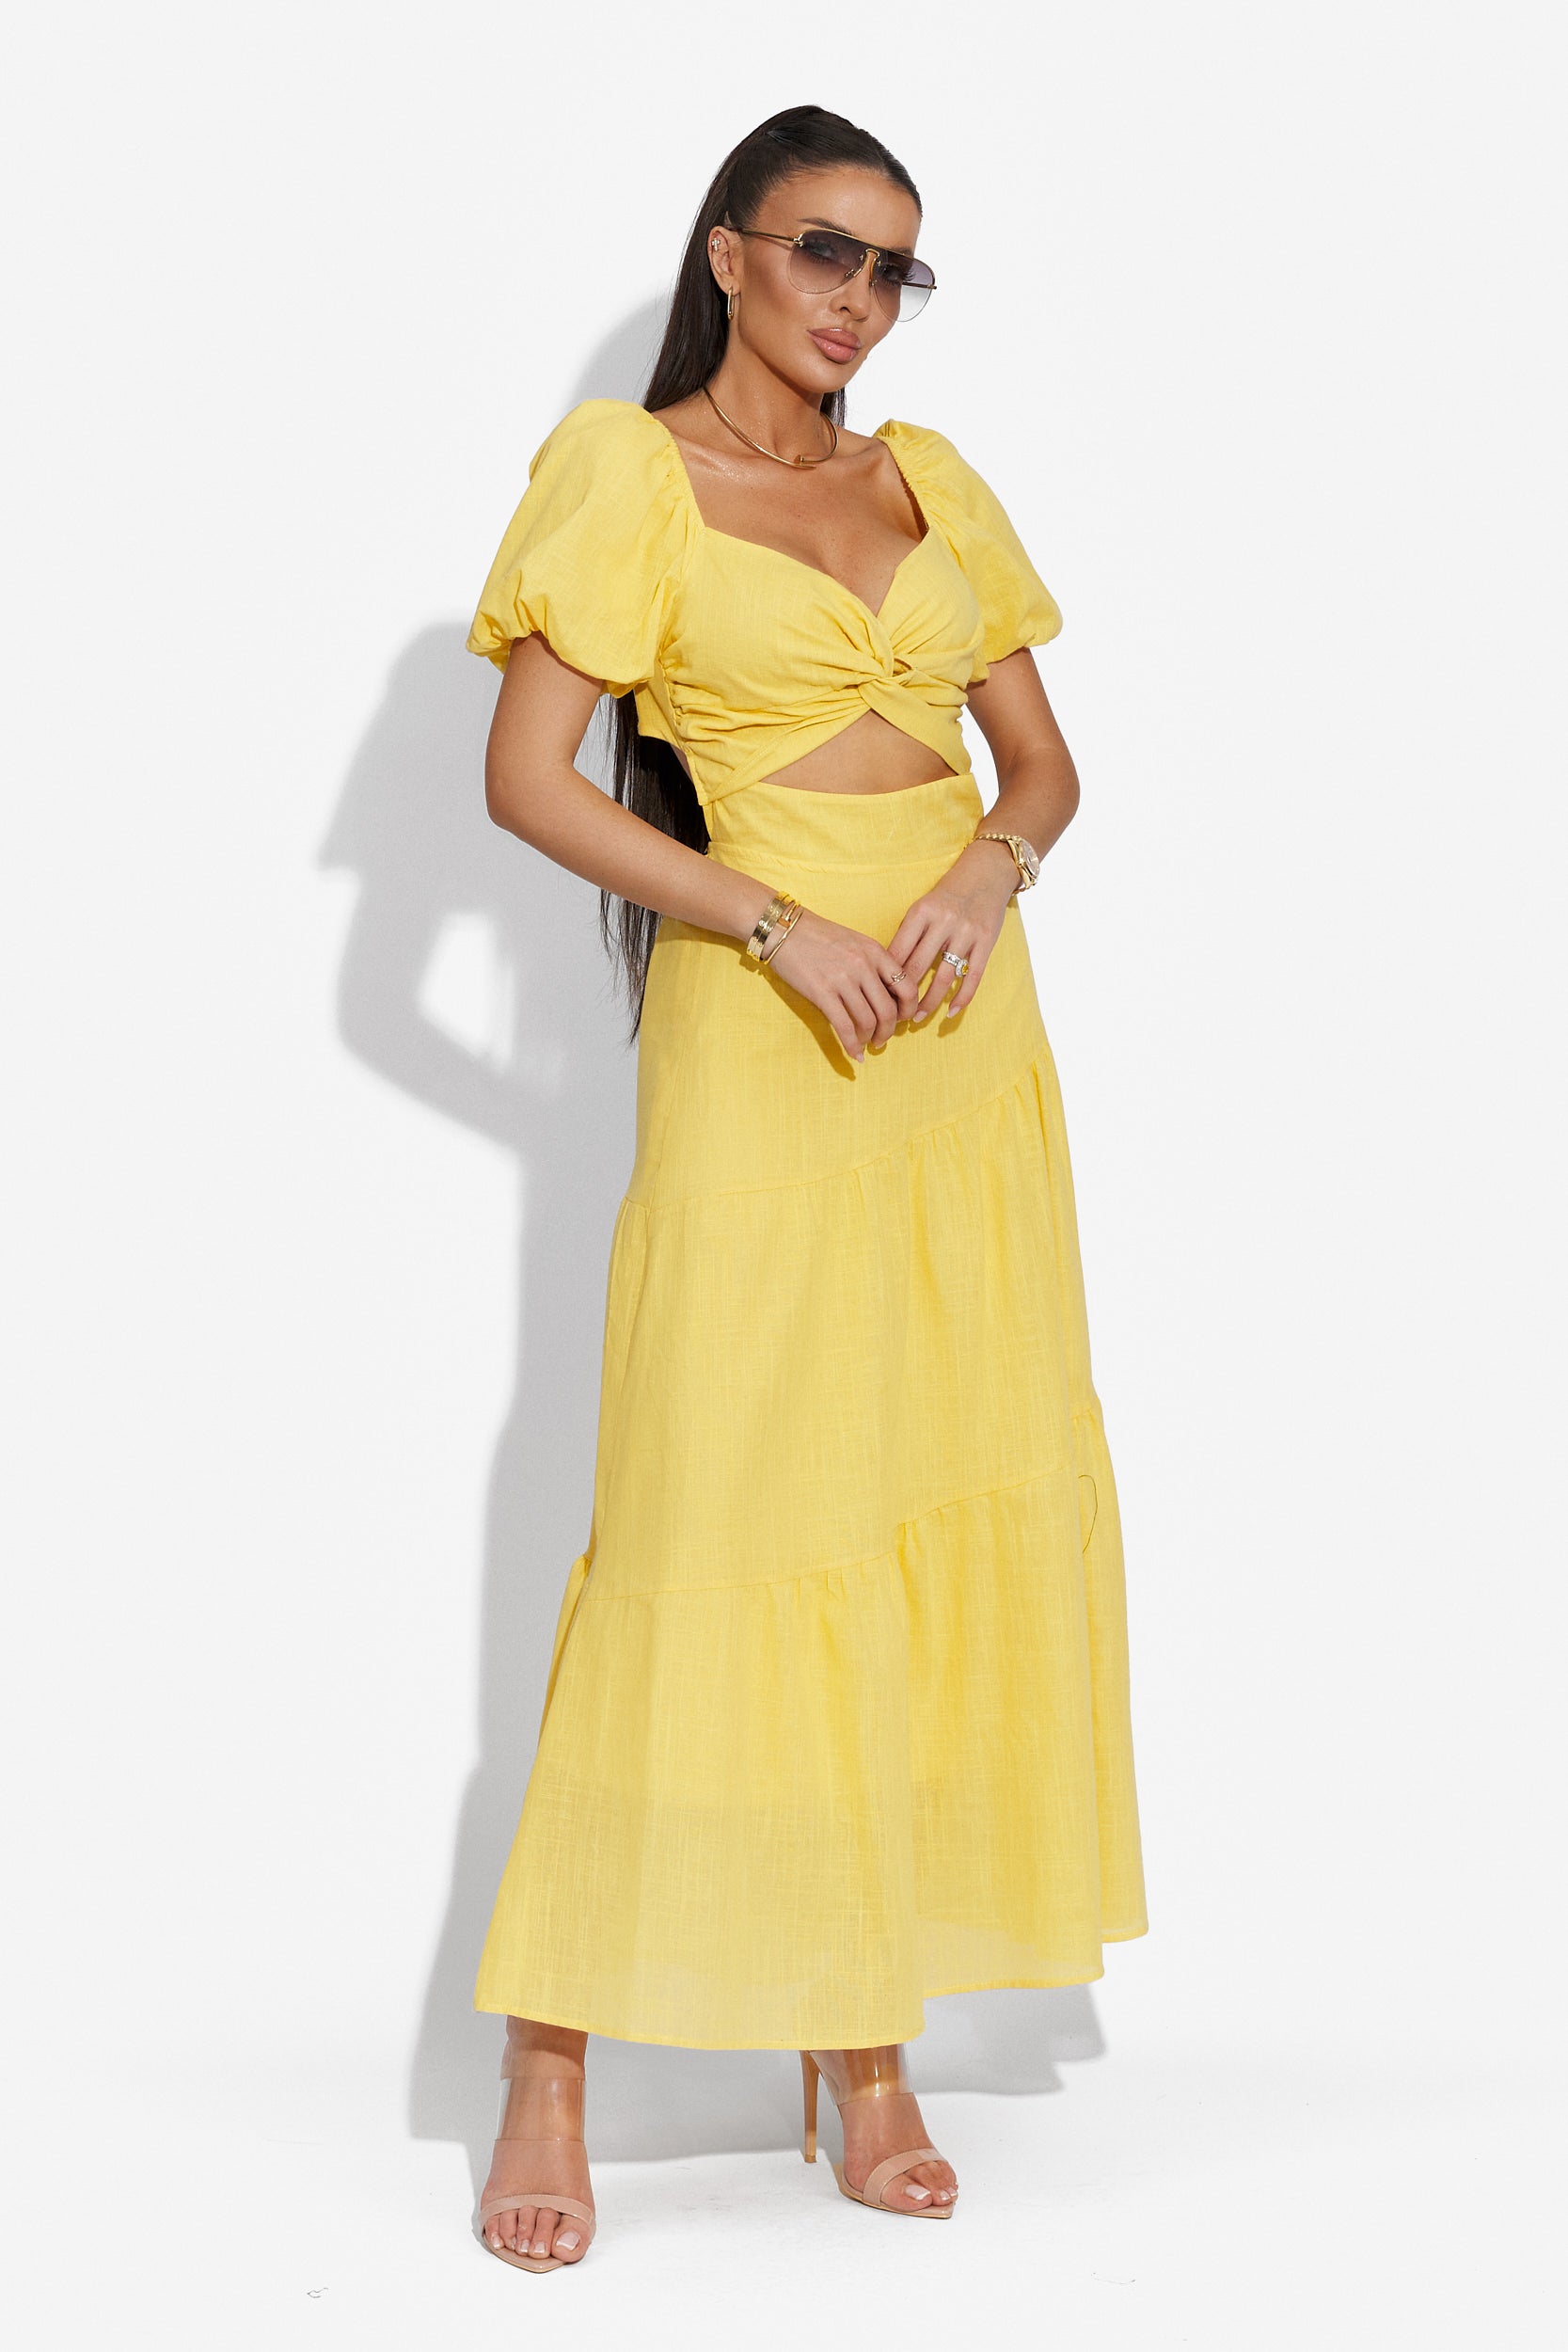 Mosysca Bogas sárga hosszú ruha nőknek